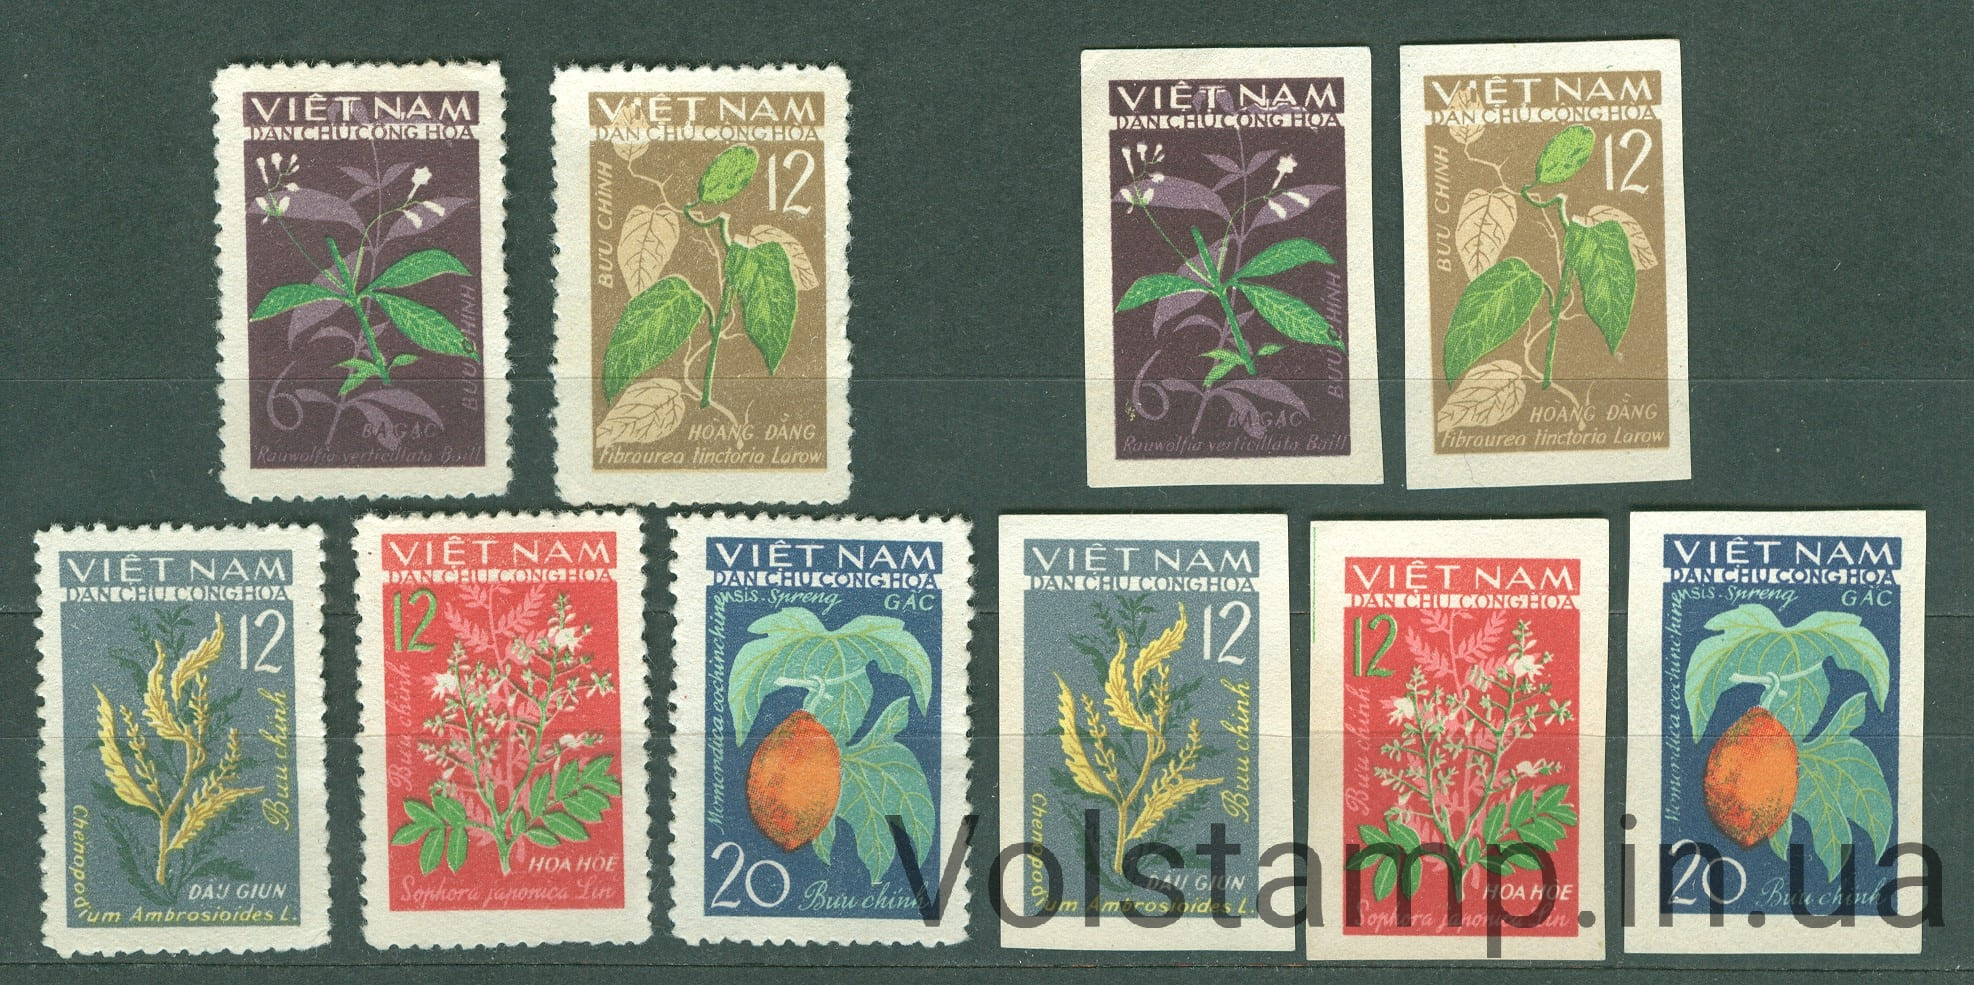 1963 Вьетнам серия марок (Флора, лекарственные растения) MNH №287-291AB